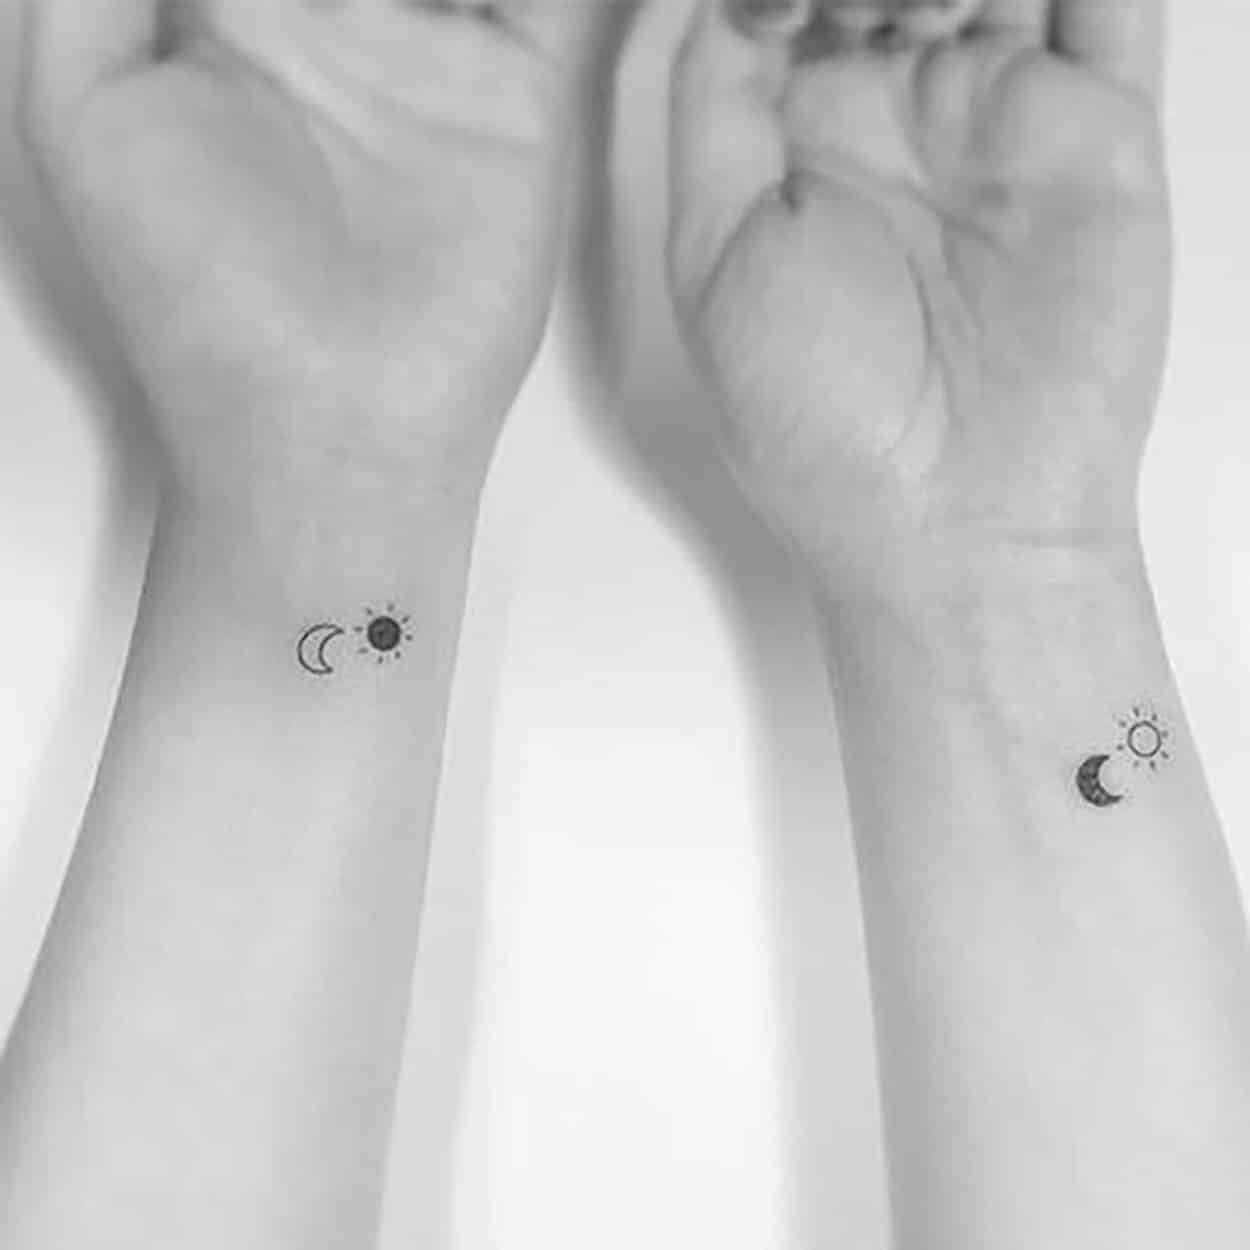 tattoo complemento sol e lua